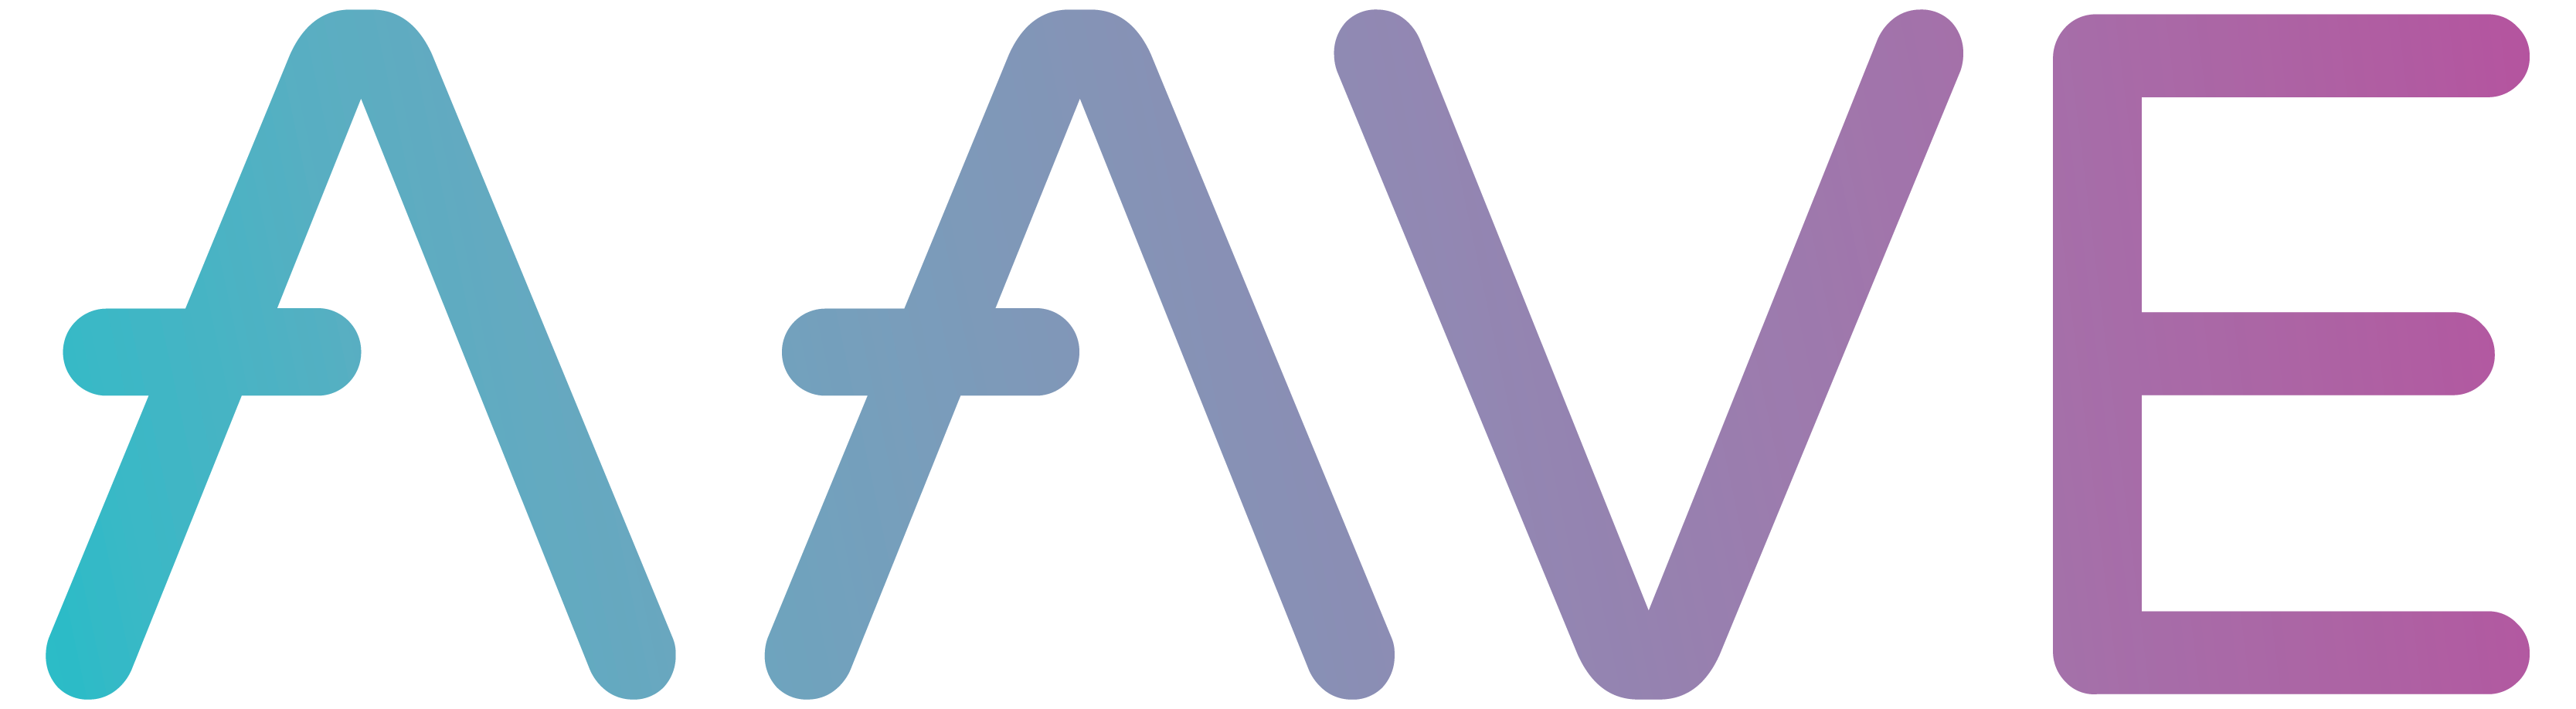 Aave kripto logosu png görüntüsü